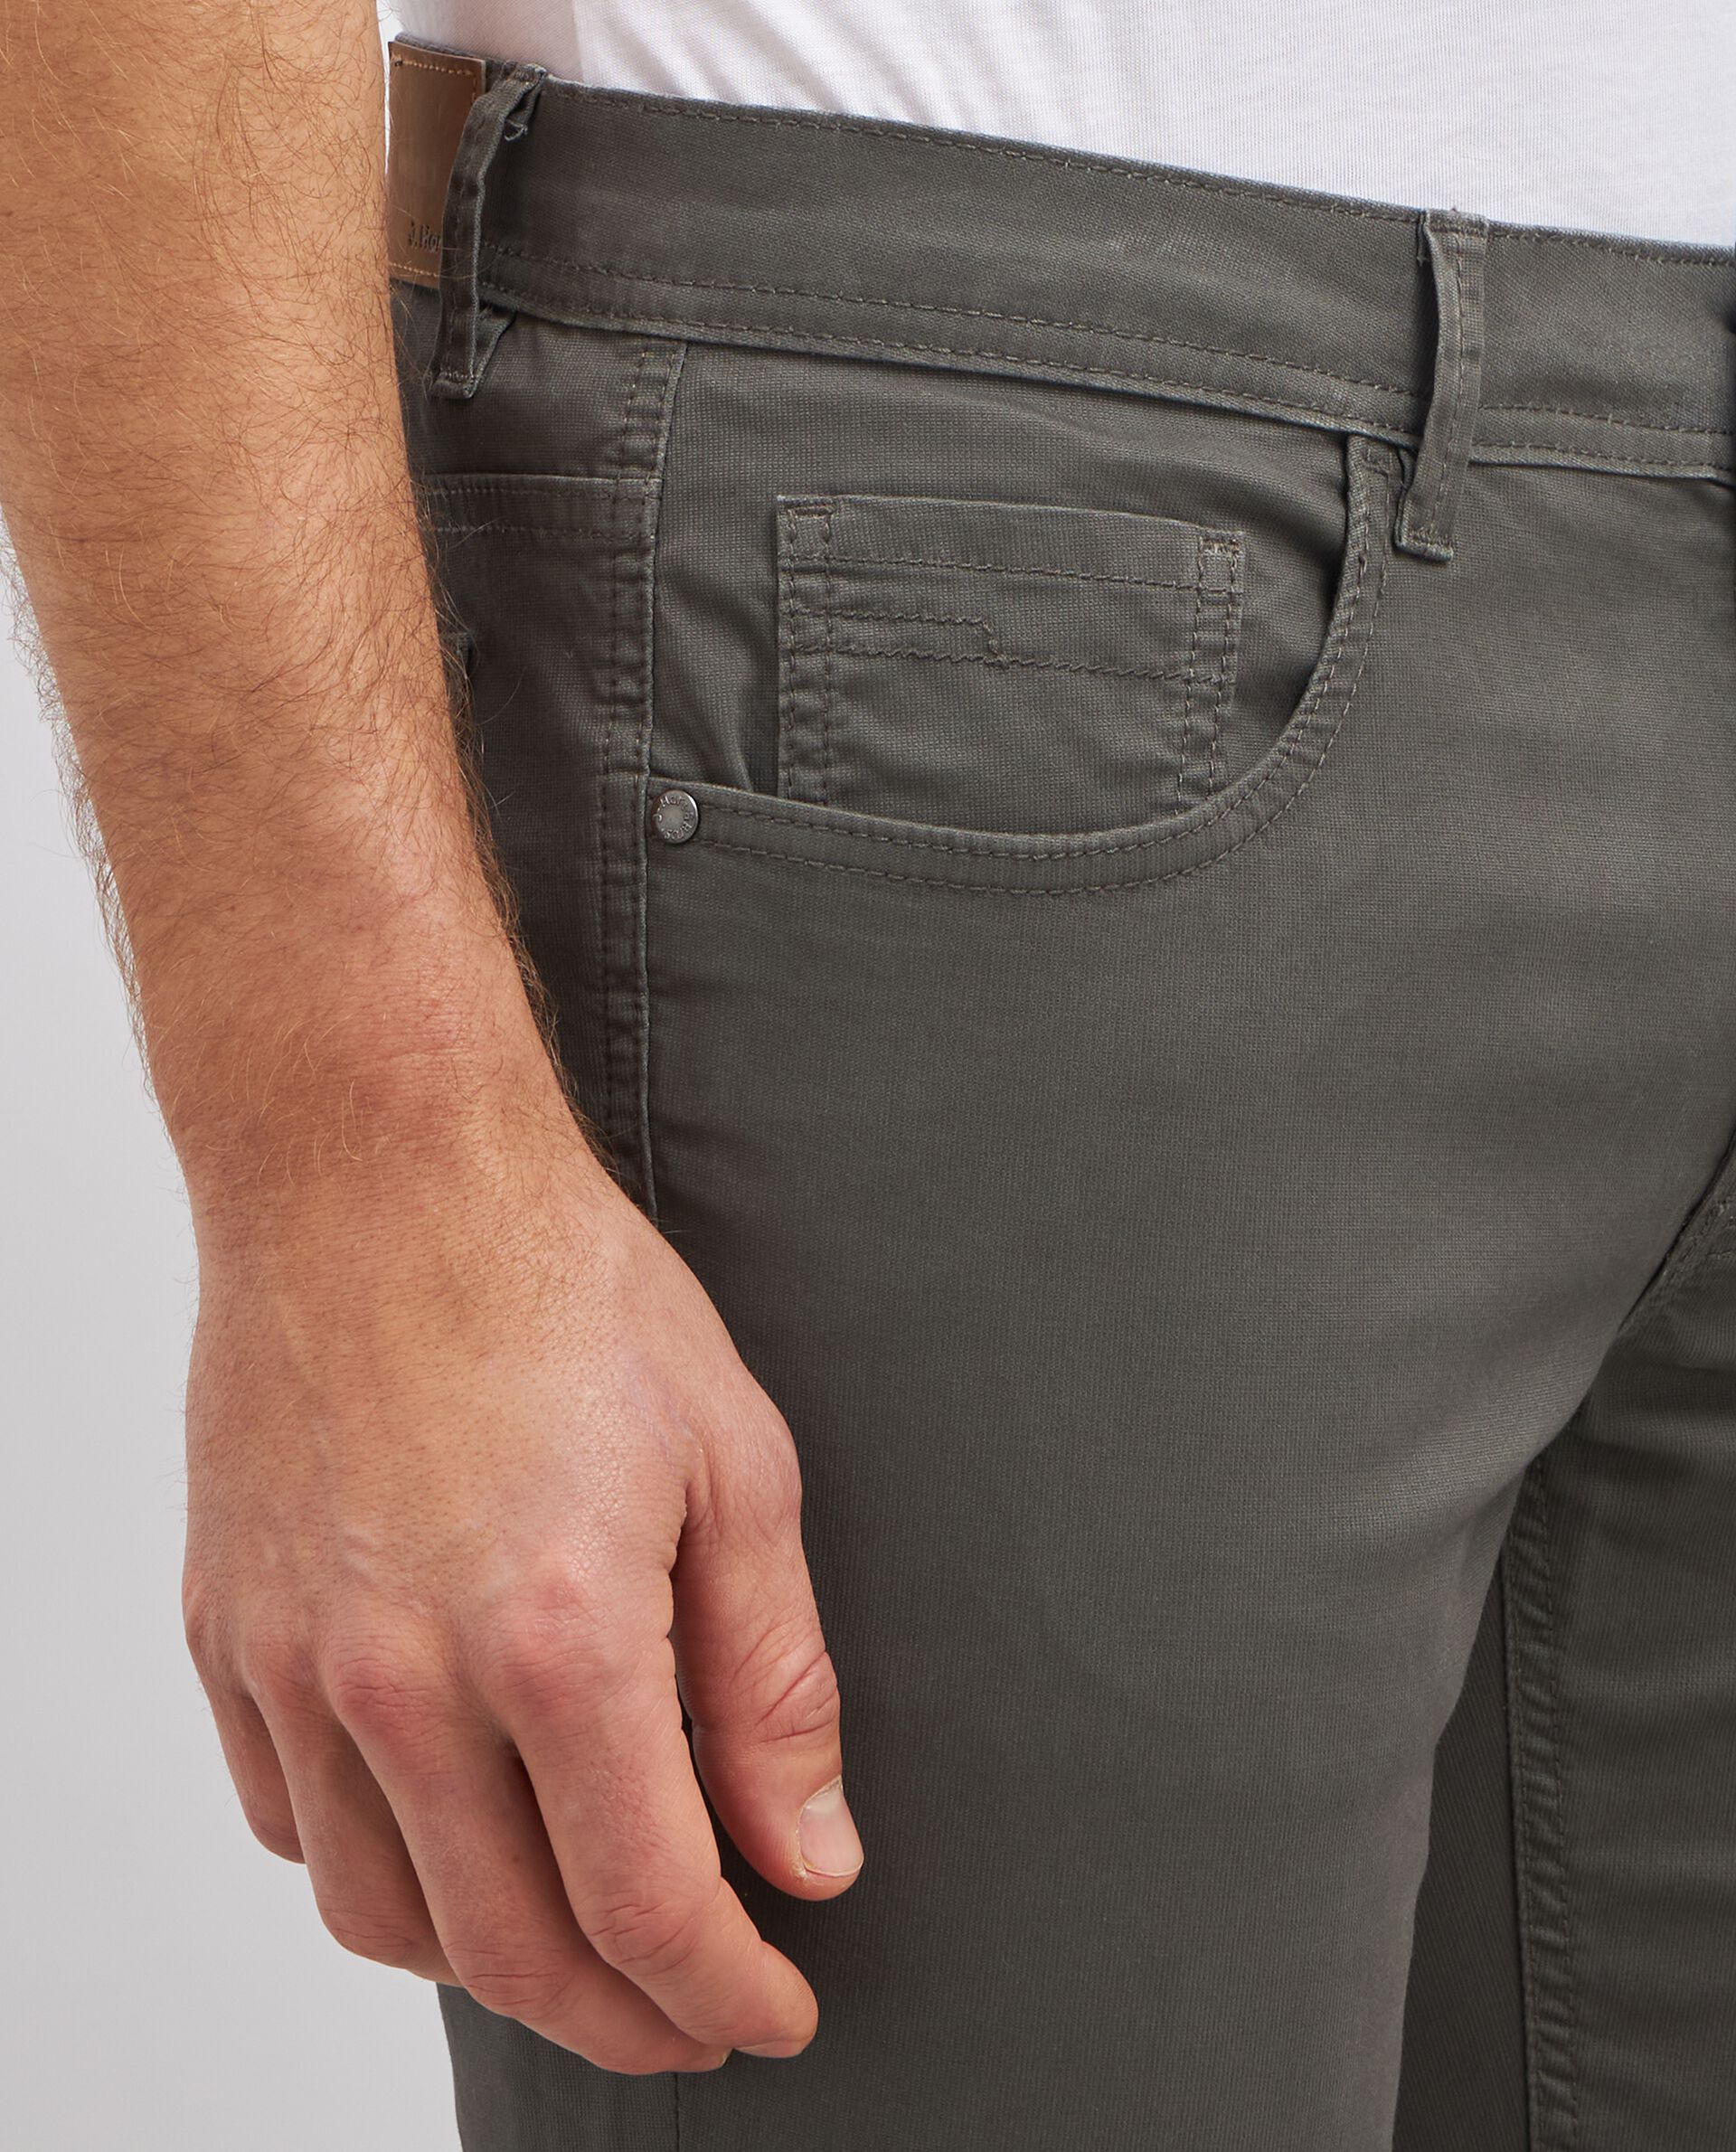 Pantaloni in puro cotone modello 5 tasche uomo